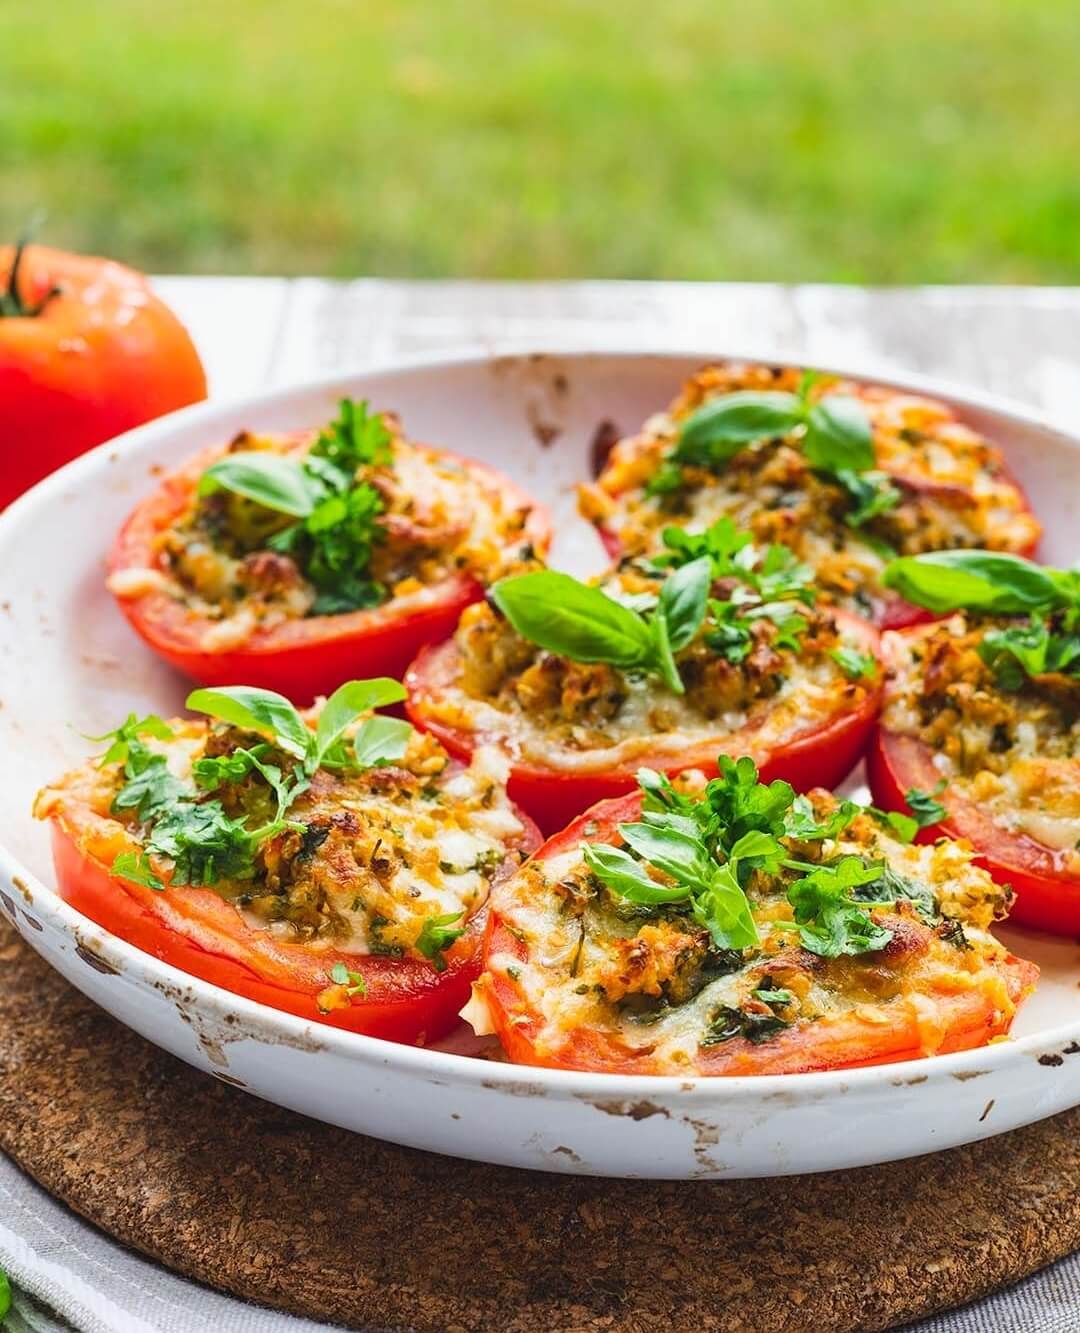 🍅🍅🍅 Juustolla ja tuoreilla yrteillä täytetyt tomaatit ovat herkullisia ja niin helppoja valmistaa. Ne ovat oiva lisäkeruoka esim. grillatun ruuan kanssa. Alkupalana ne toimivat mainiosti esim paahdetun leivän päällä. 🍅🍅🍅